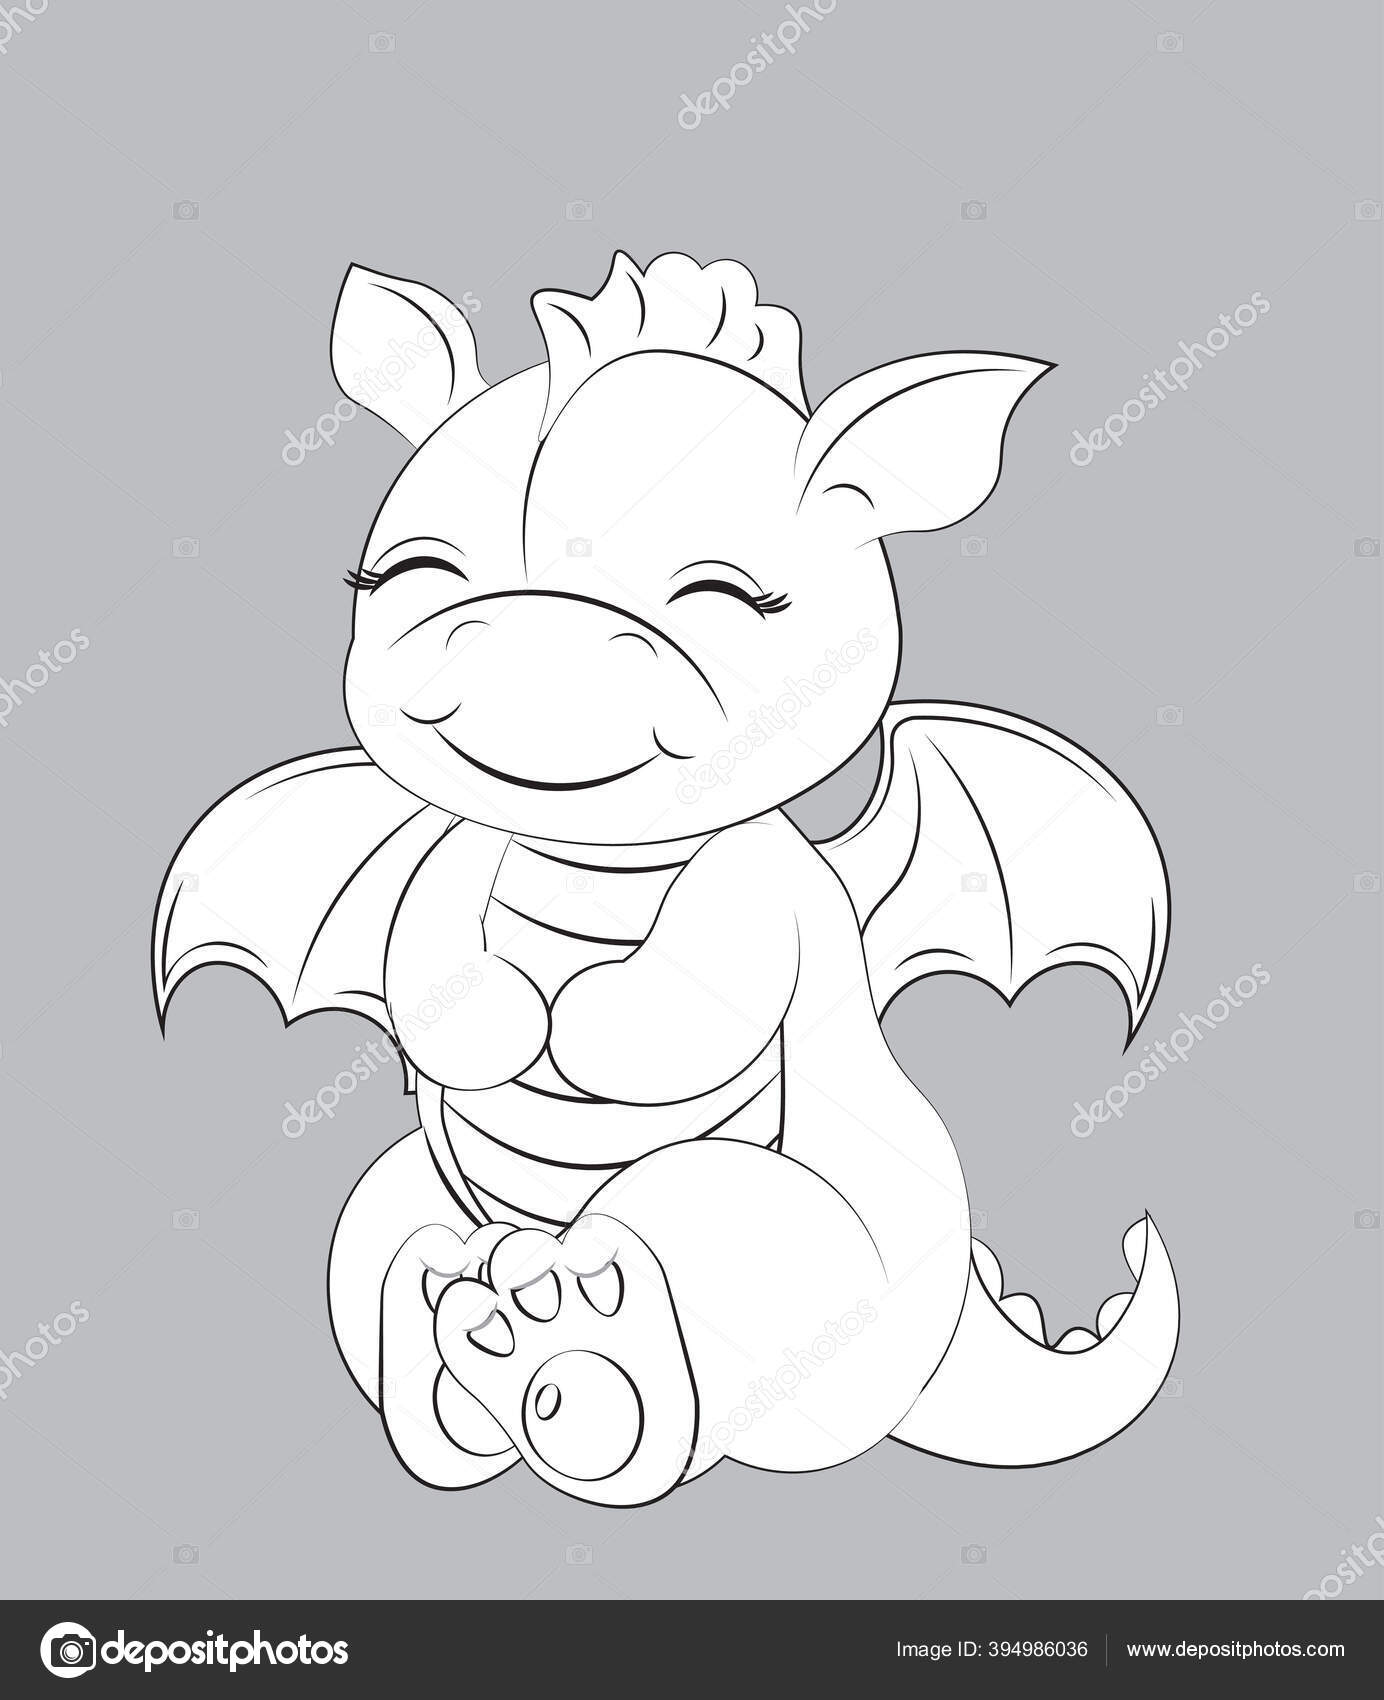 Desenho de Dragão bebé para Colorir - Colorir.com